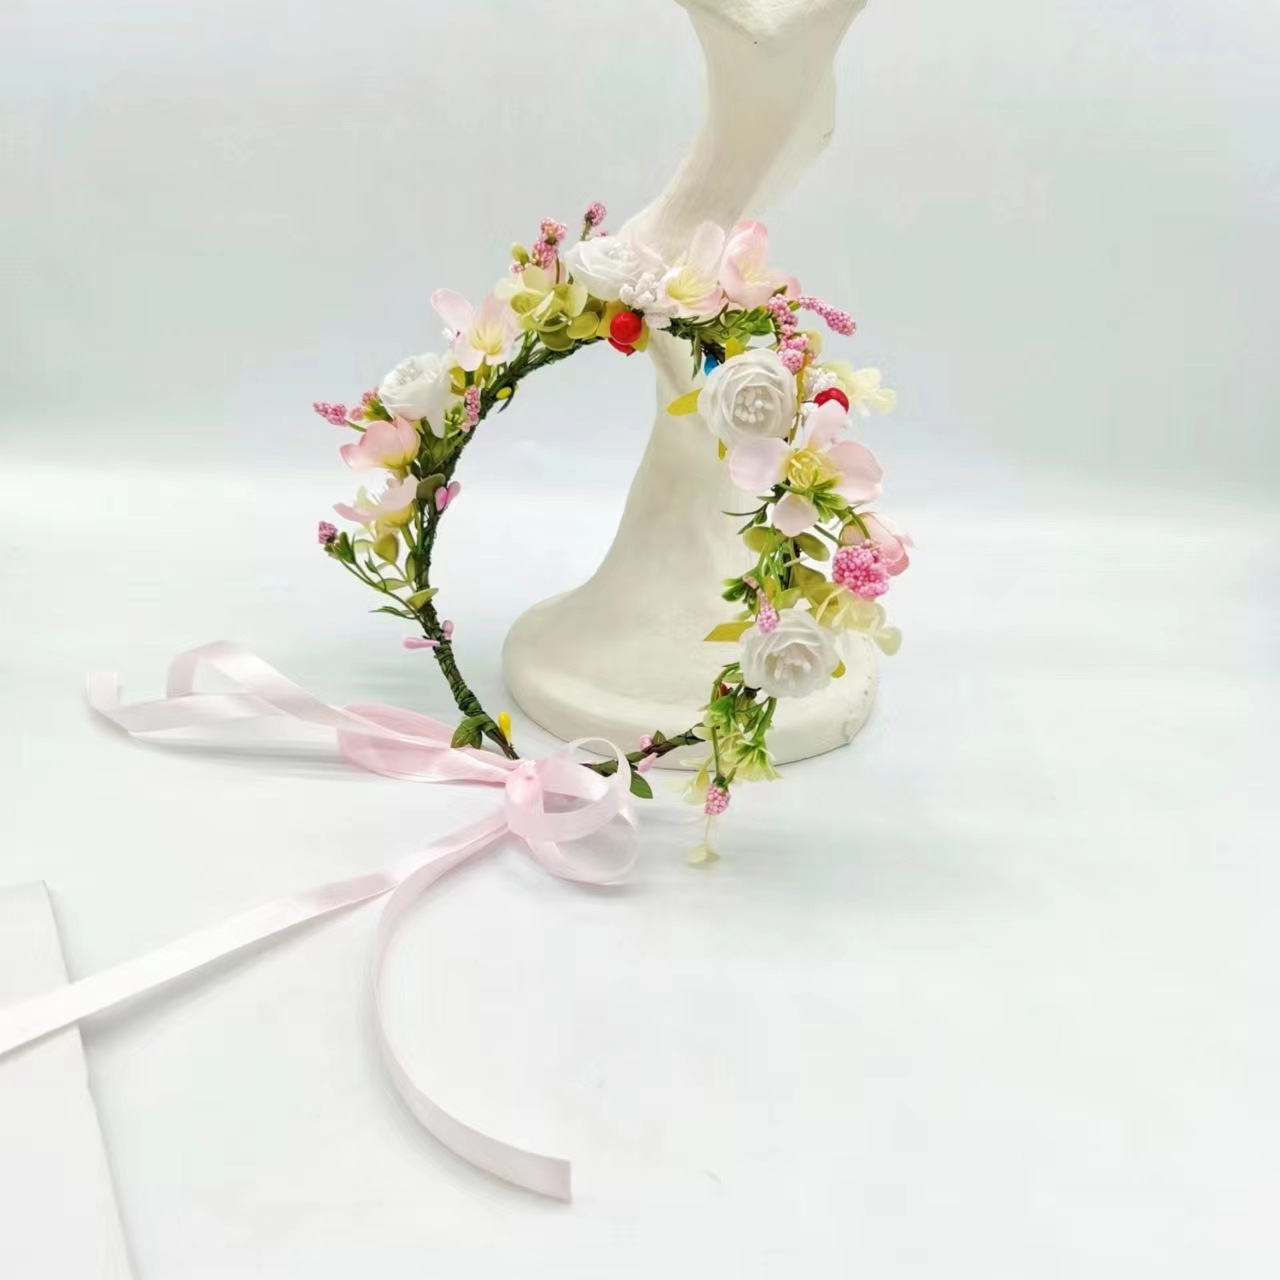 妖精の森の花冠ヘッドバンド、シミュレーション桜の花の王女の髪飾り、旅行やパフォーマンスに最適